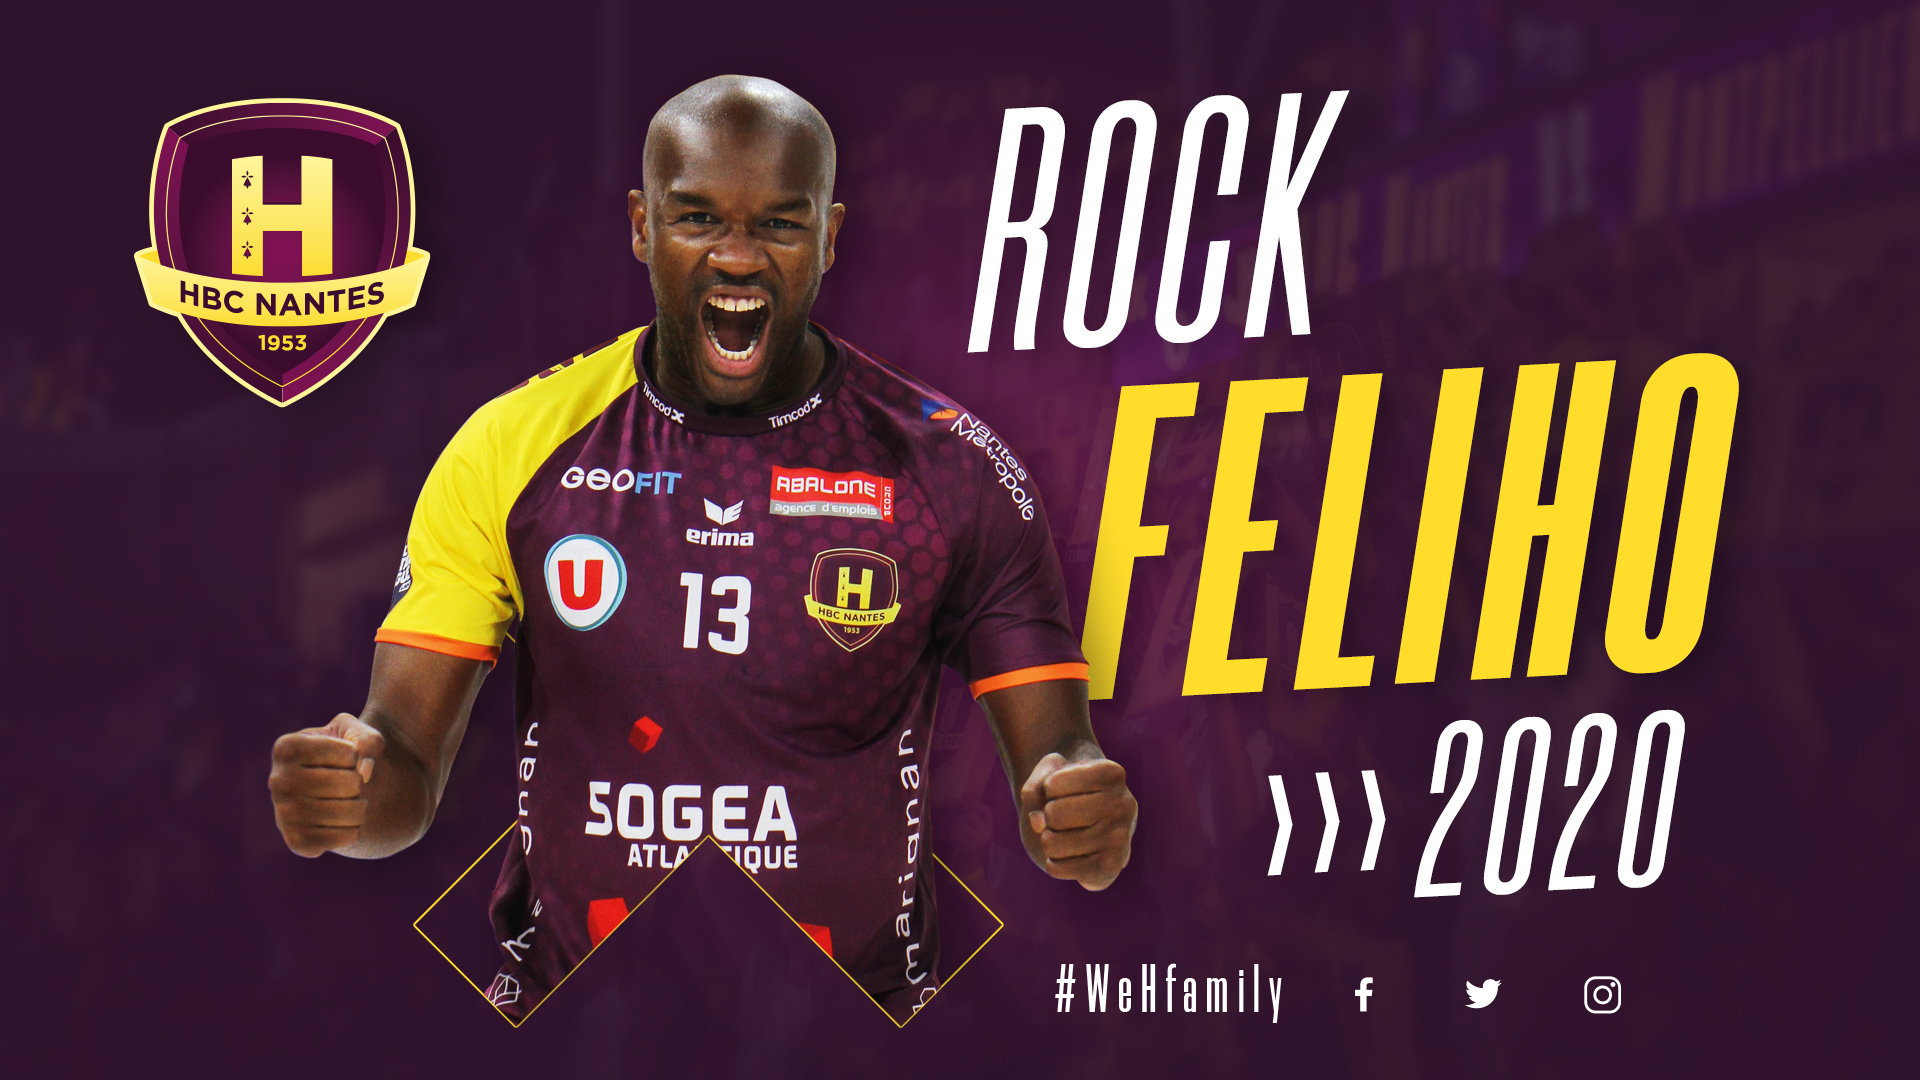 Rock Feliho prolonge jusqu'en Juin 2020